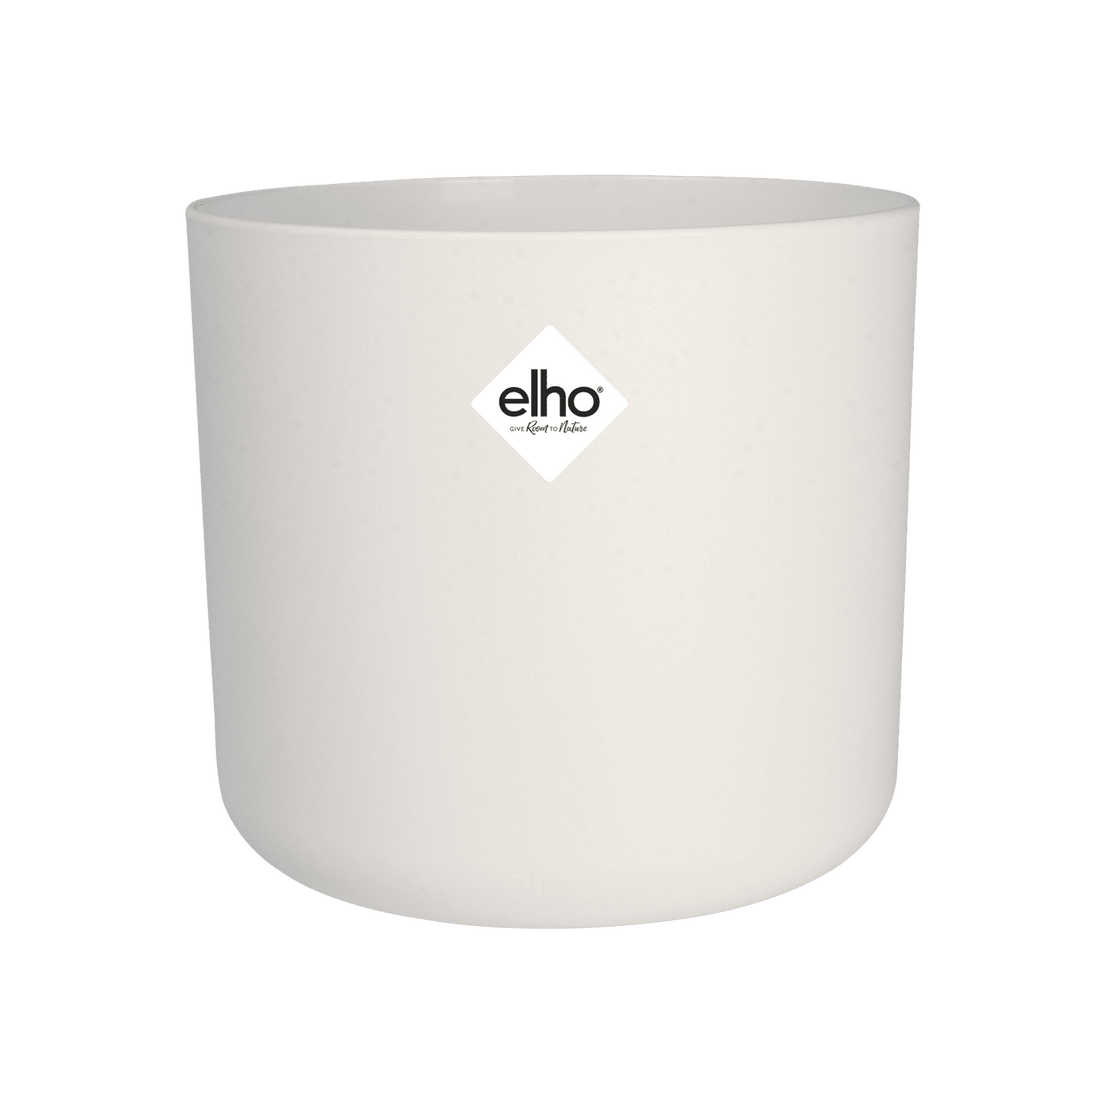 B.for Soft Round ELHO pot cover DIAM 35 H32,3 CM WHITE